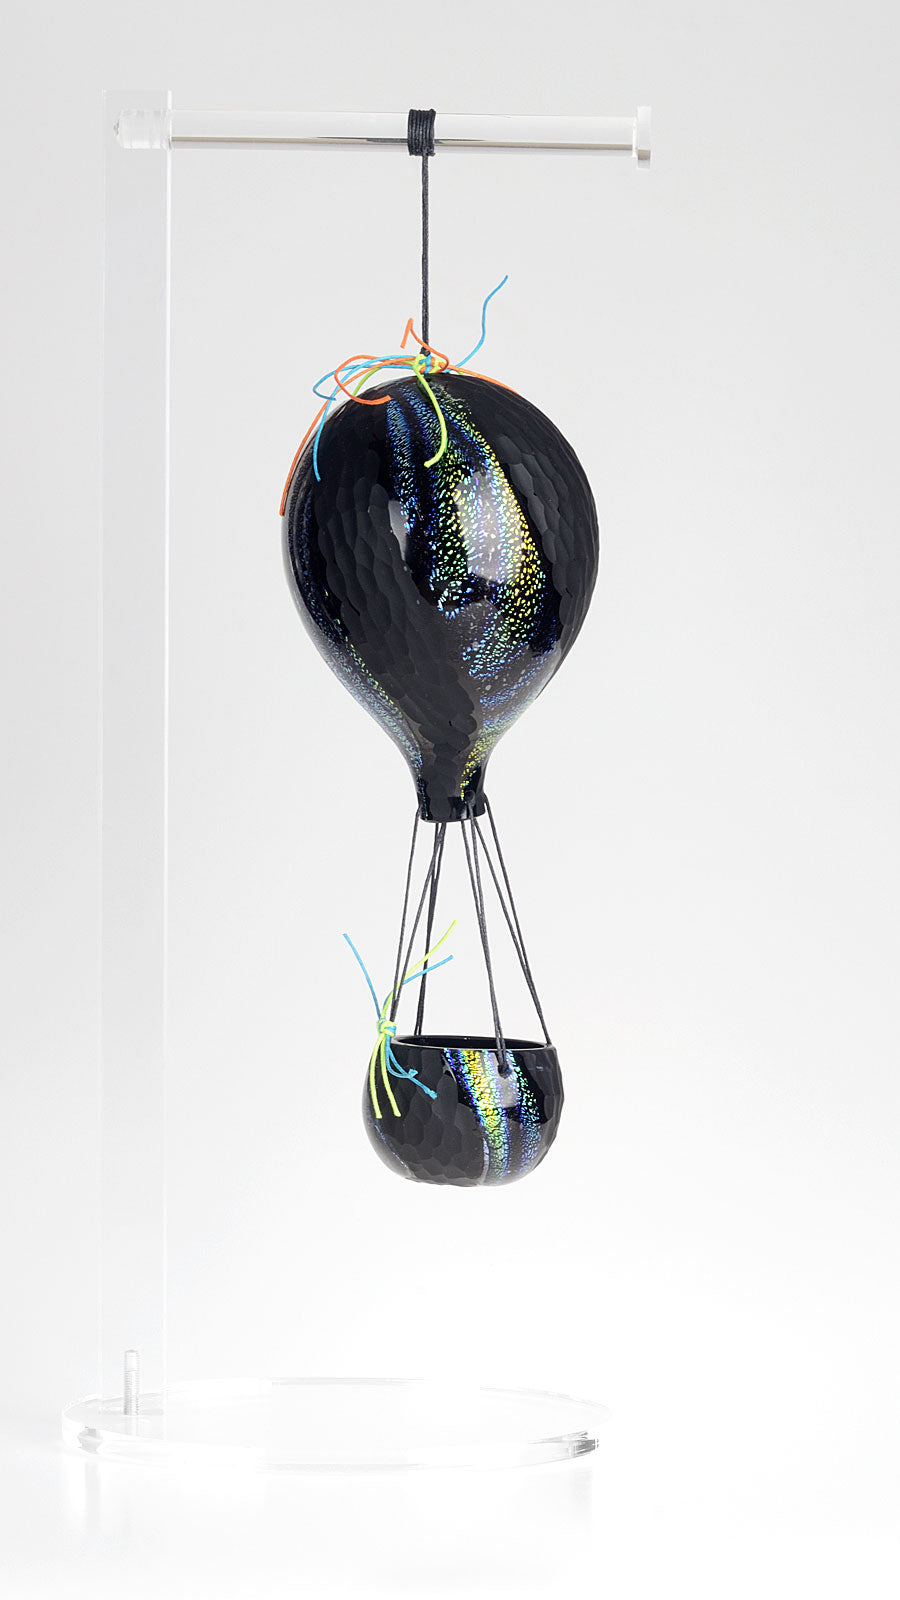 Murano glass balloon